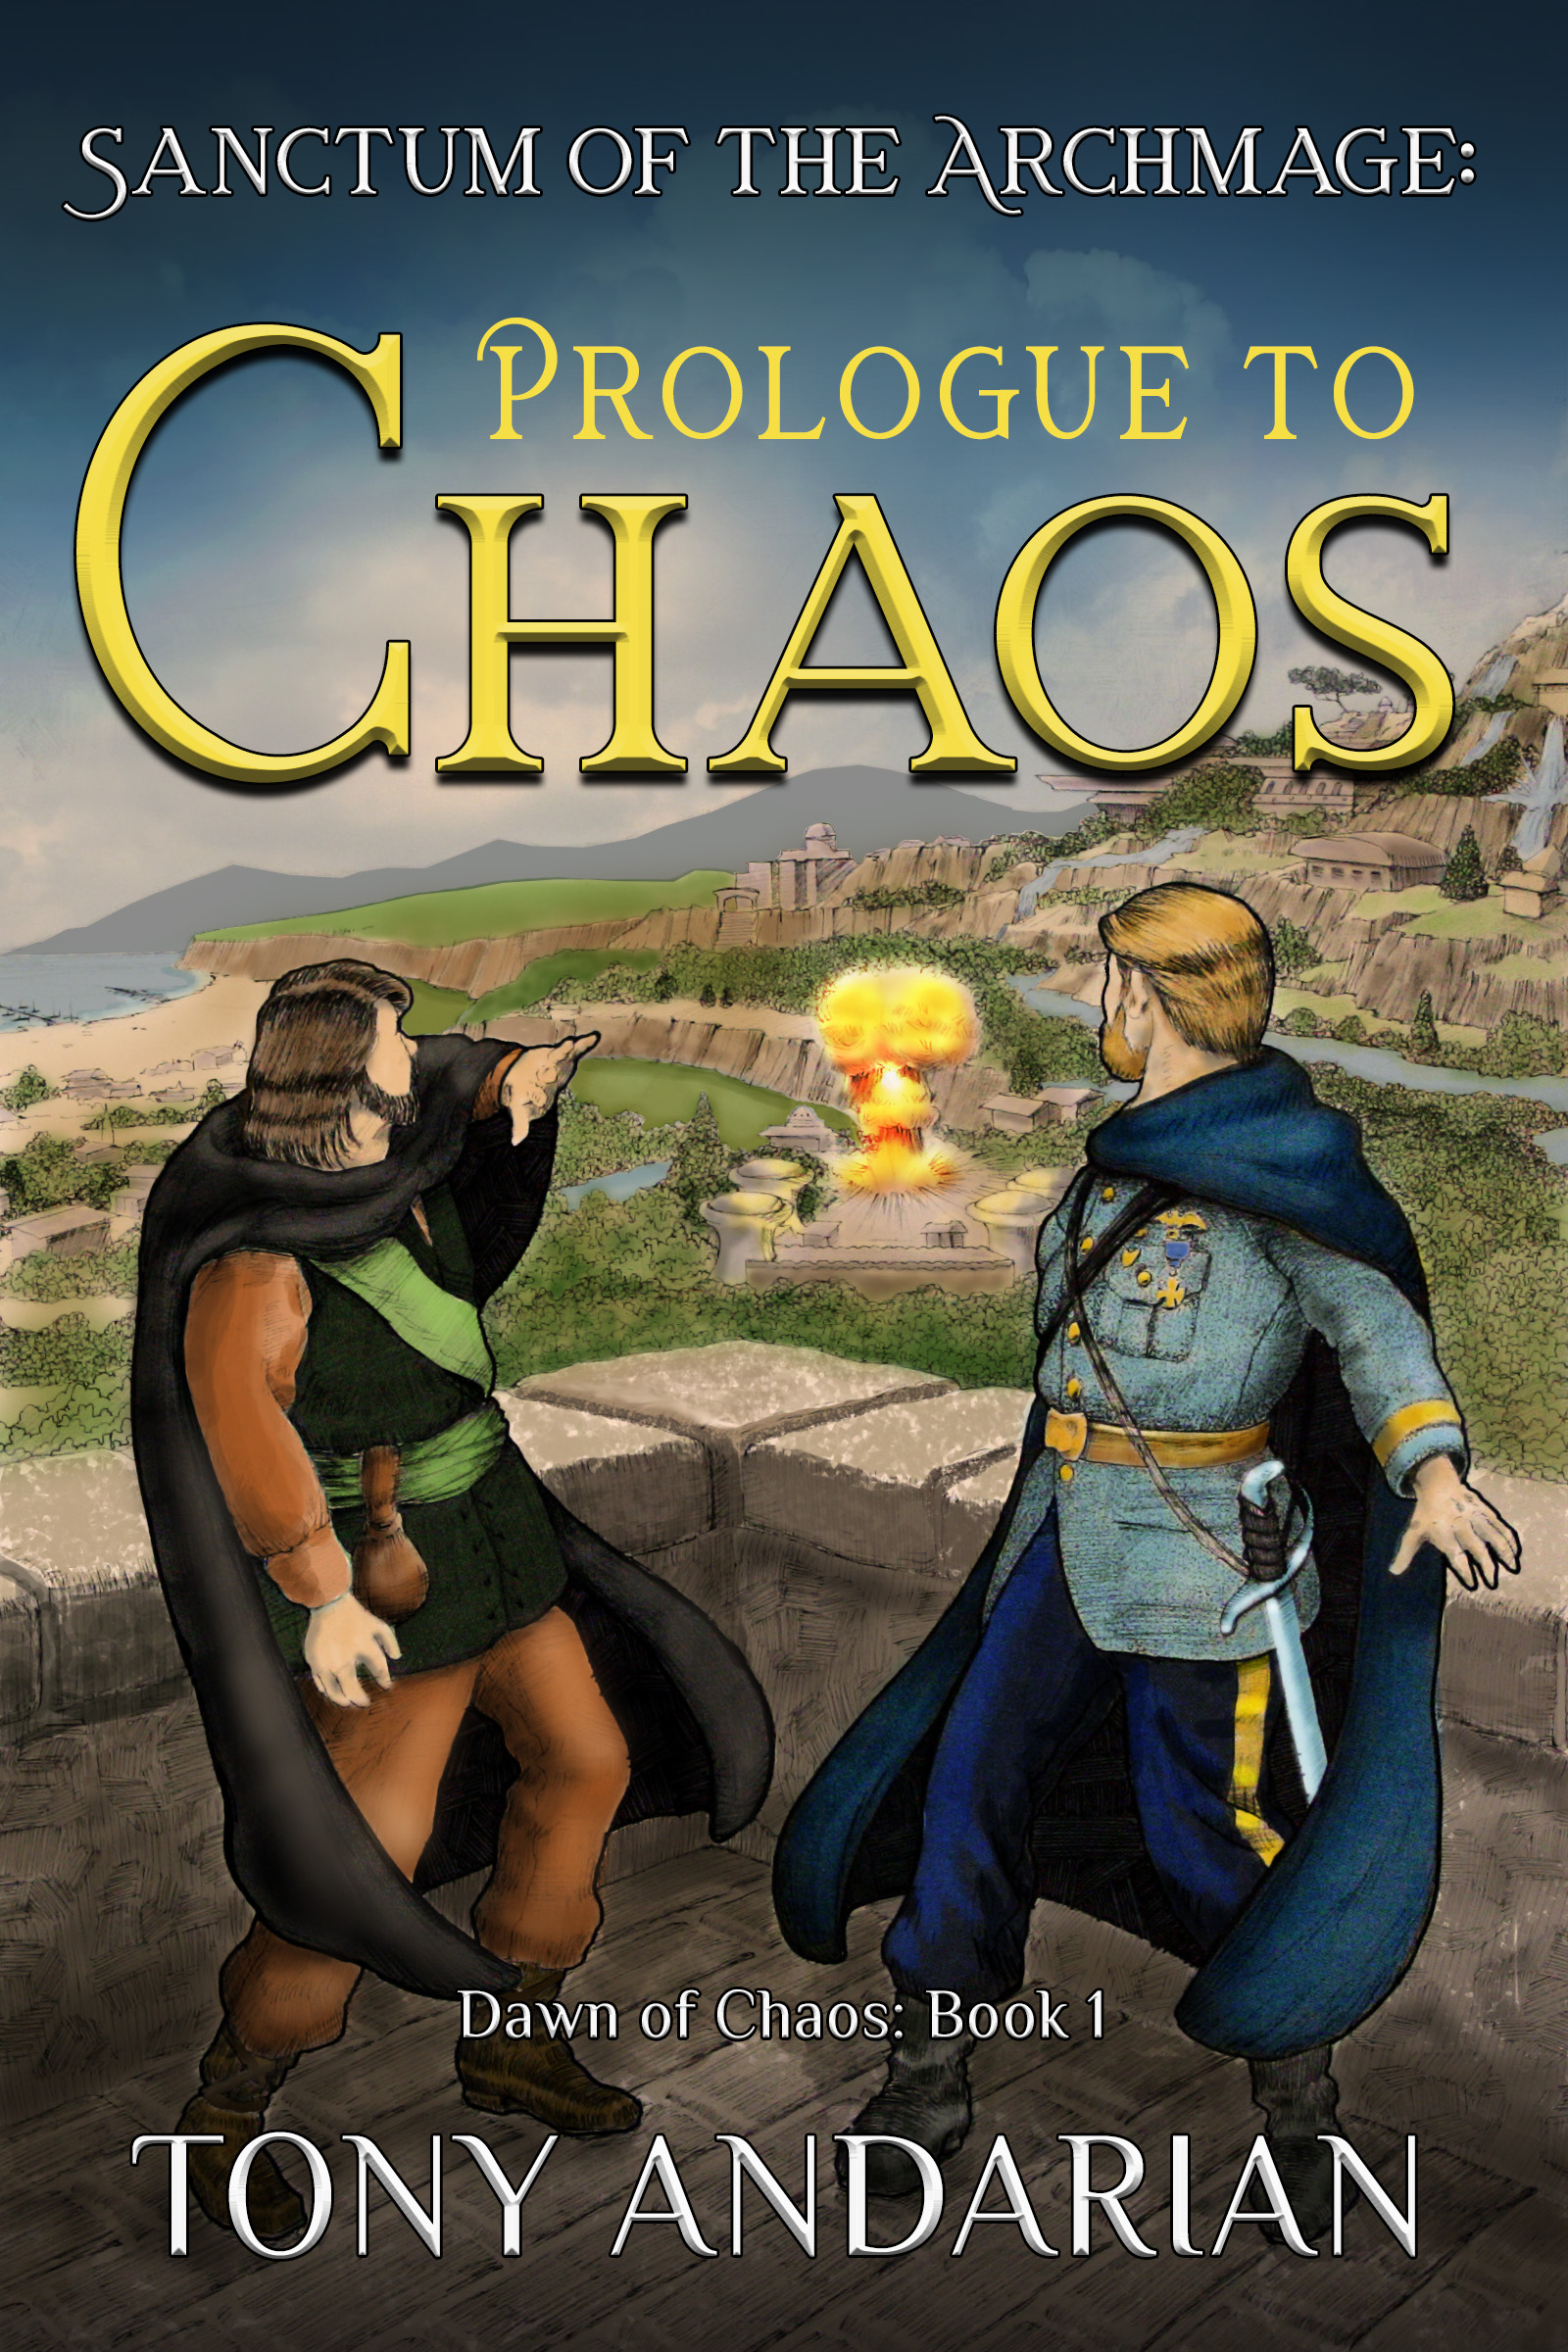 Read Prologue to Chaos